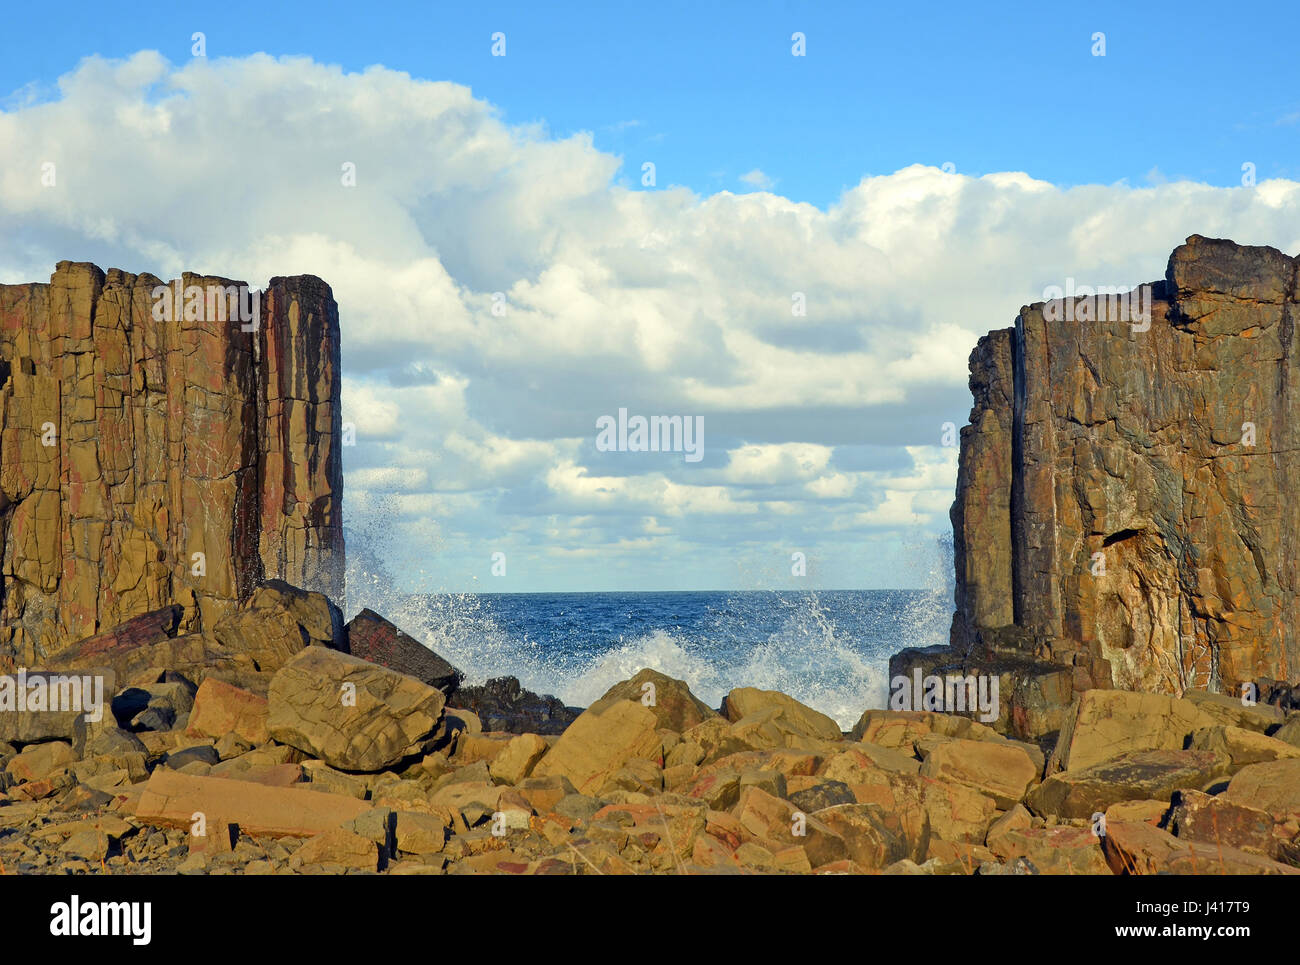 Onde che si infrangono nella intercapedine tra il basalto formazioni rocciose con la vista verso il mare a Bombo cava di capezzagna, New South Wales coast, Australia Foto Stock